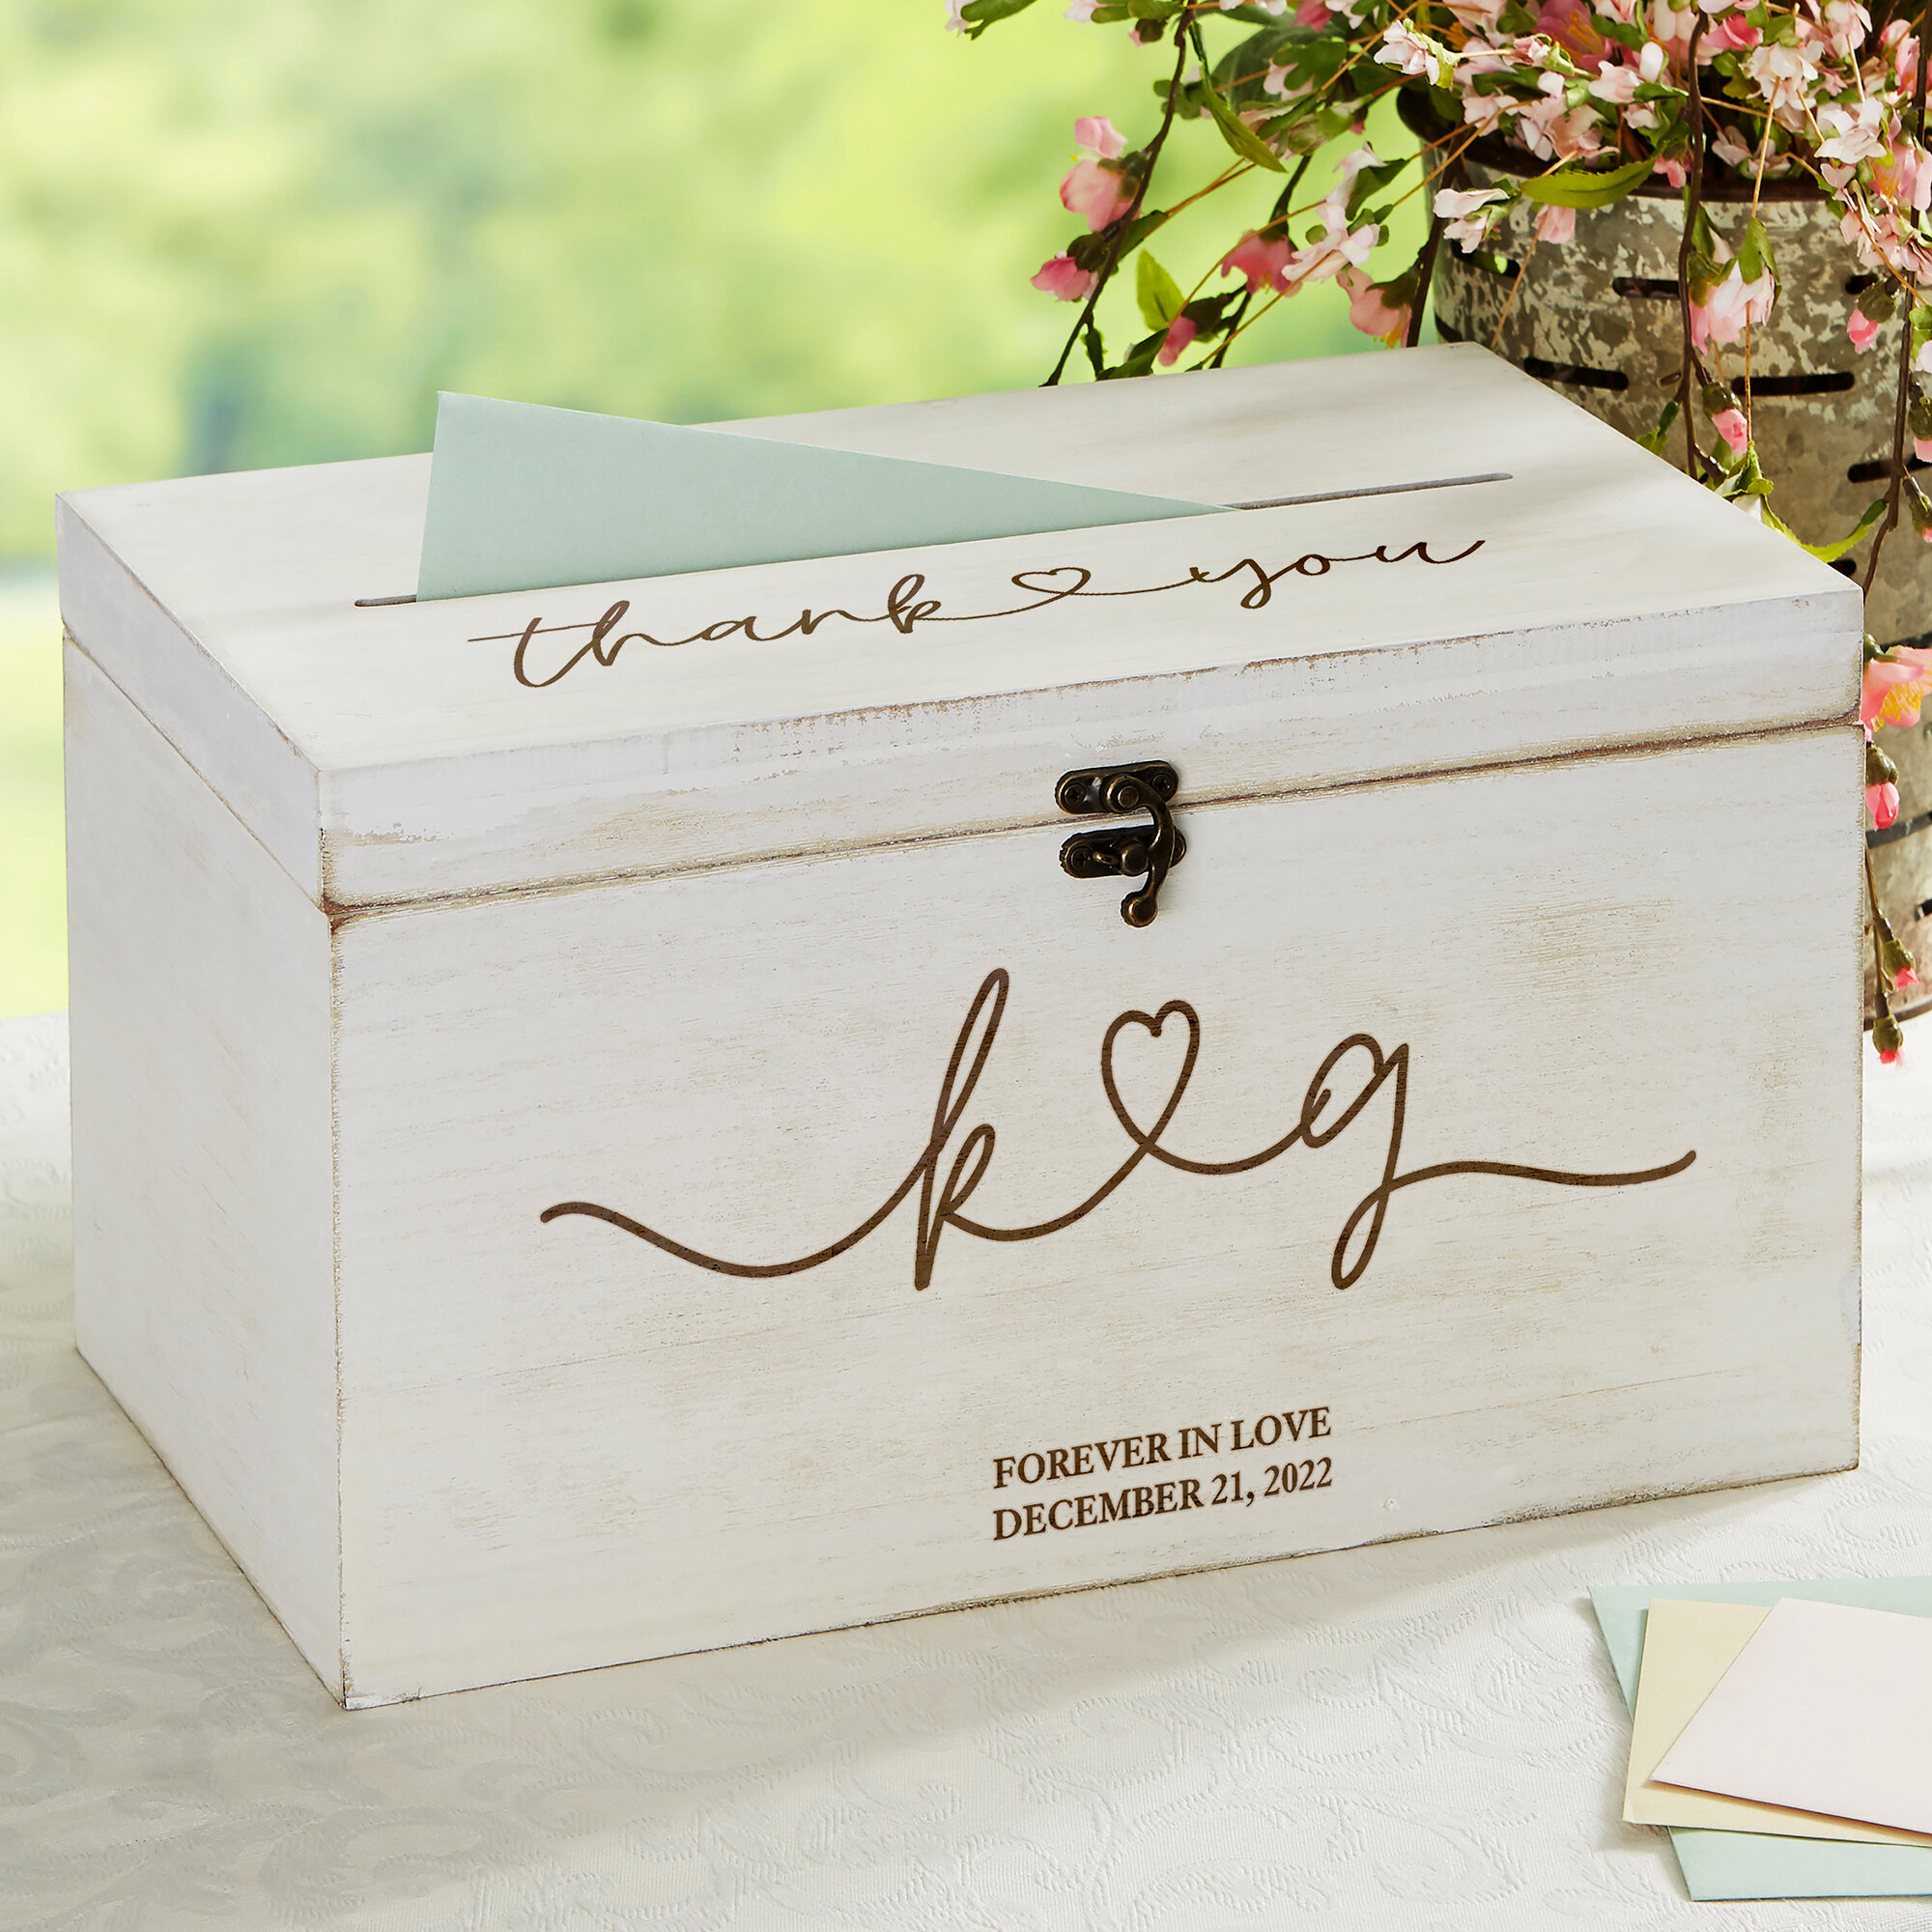 Personalization Mall Personalized Wedding Keepsake Card Box